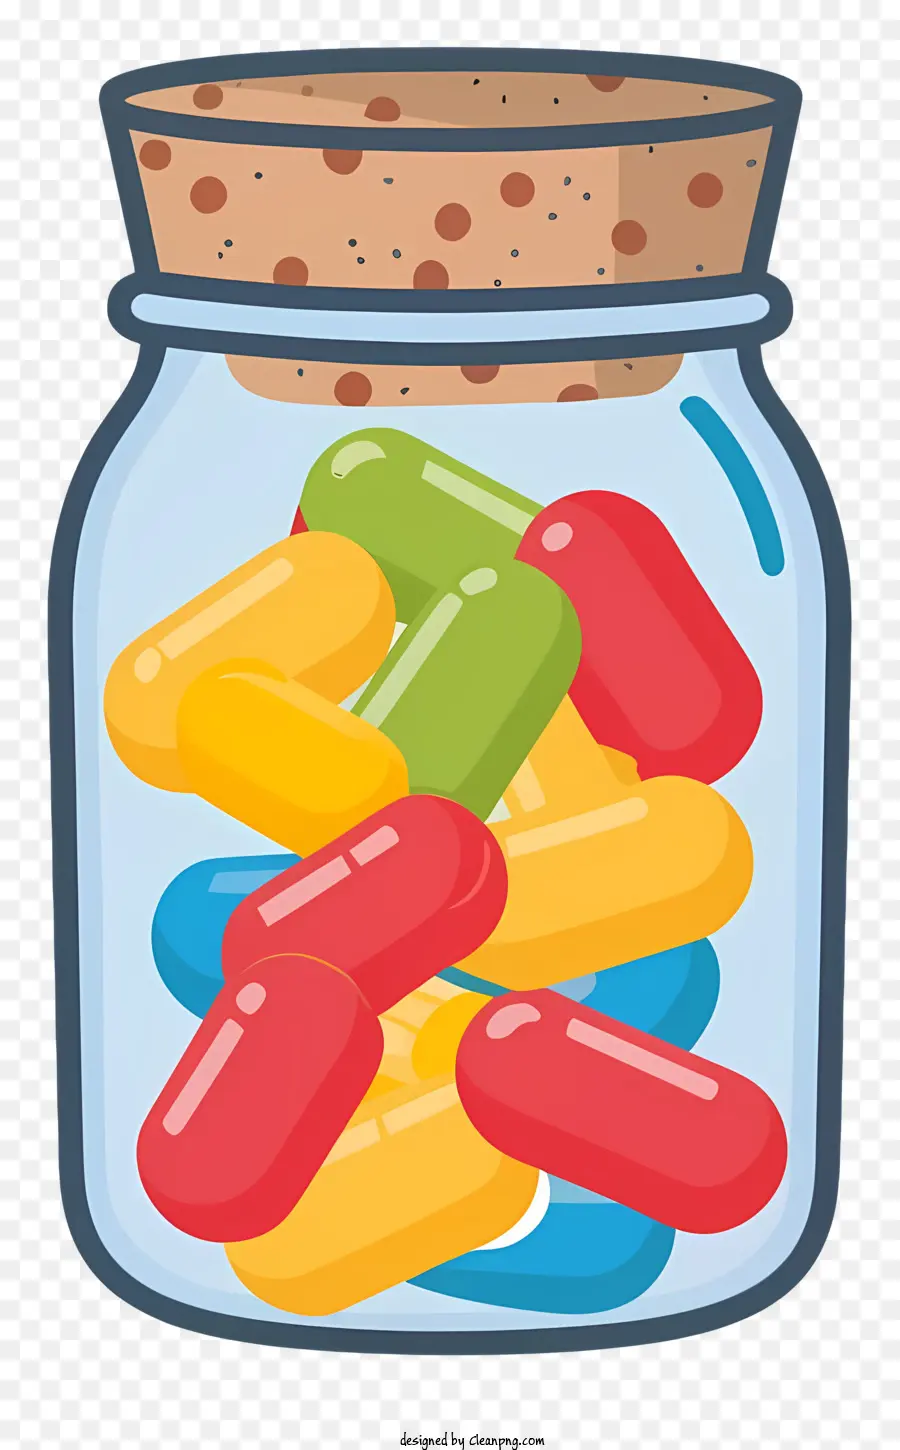 pillole di vetro pillole colorate per le pillole rivestite di tappo in sughero - Pillole colorate visualizzate in barattolo di vetro con sughero